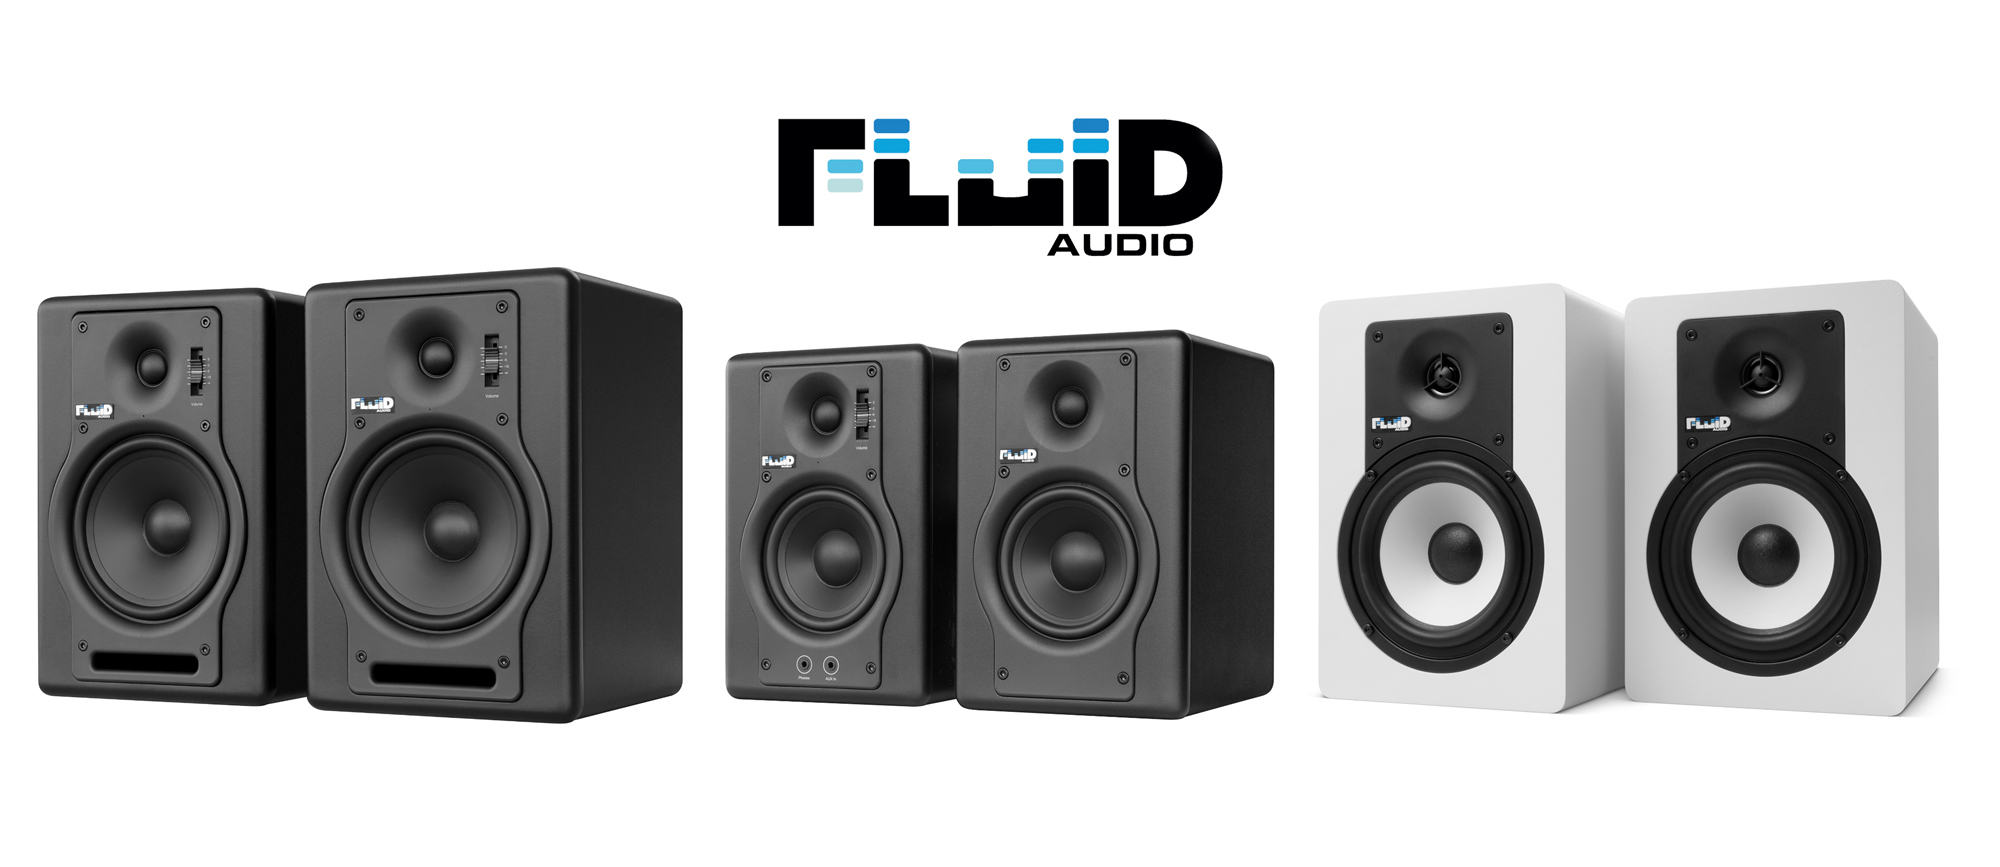 Fluid Audio」ブランドのモニター・スピーカー輸入販売を開始～クリア 